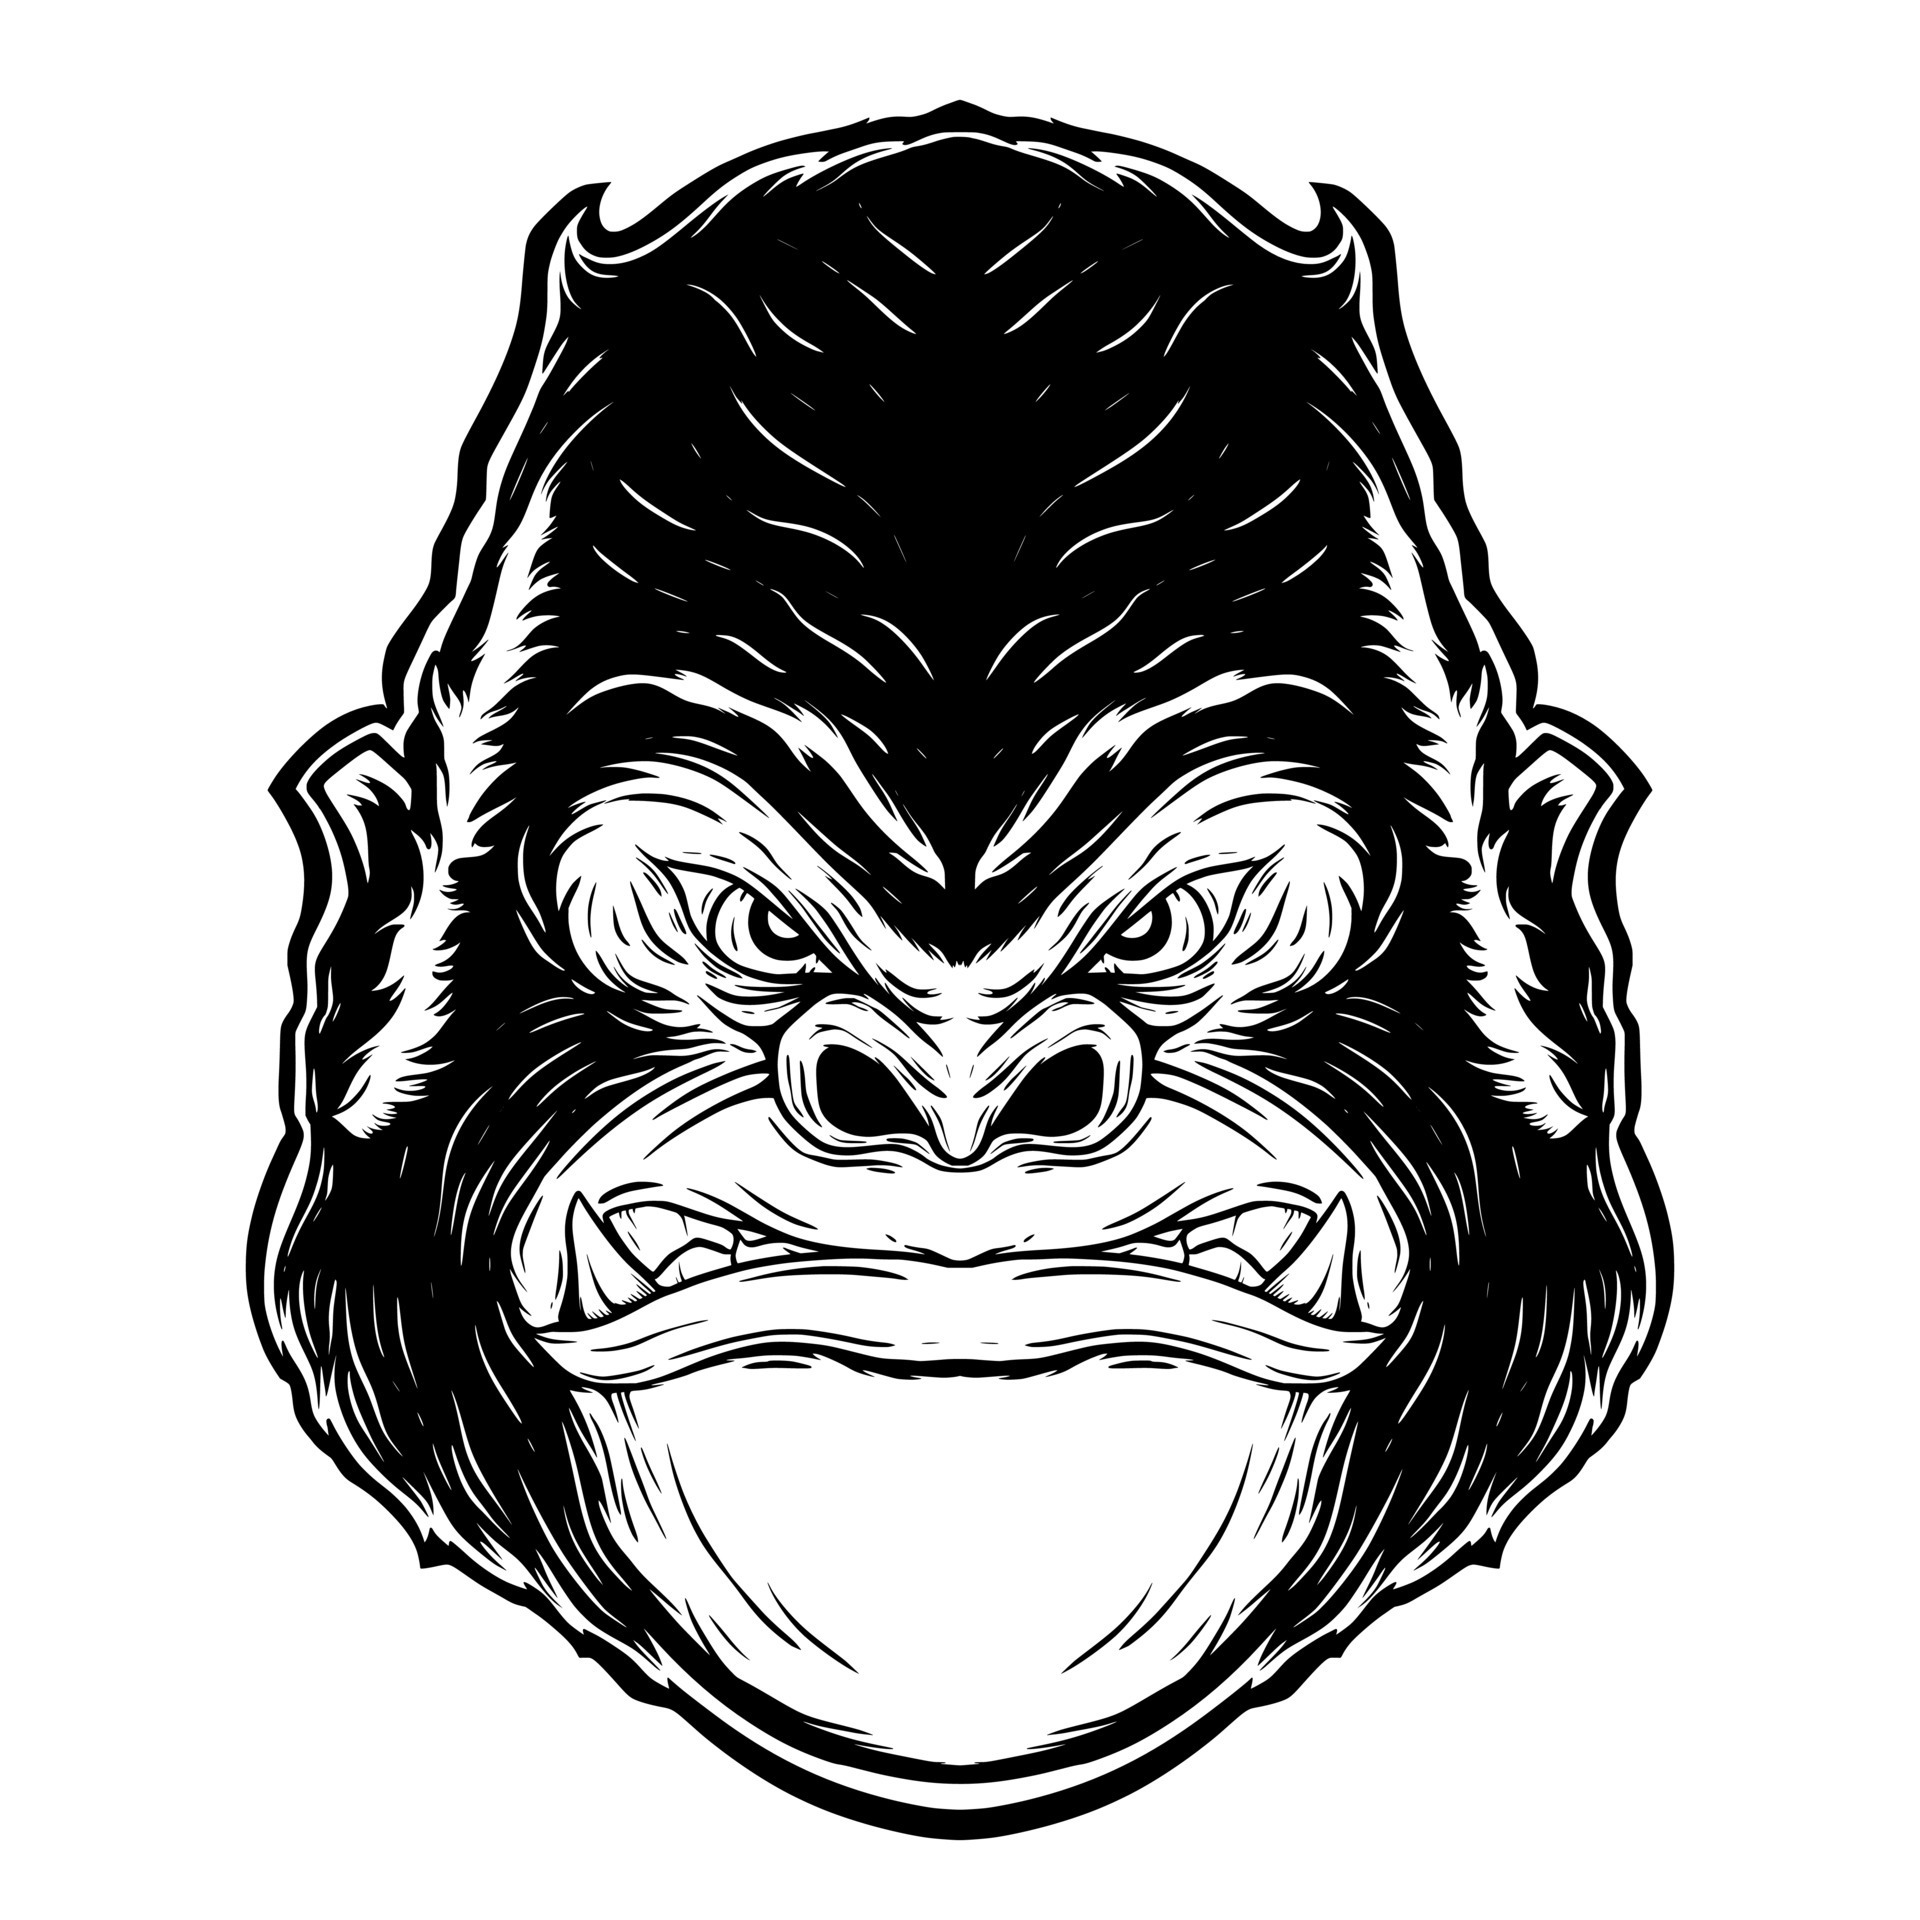 Gorilla head illustration mascot digital drawing 8063009 Vector Art at ...